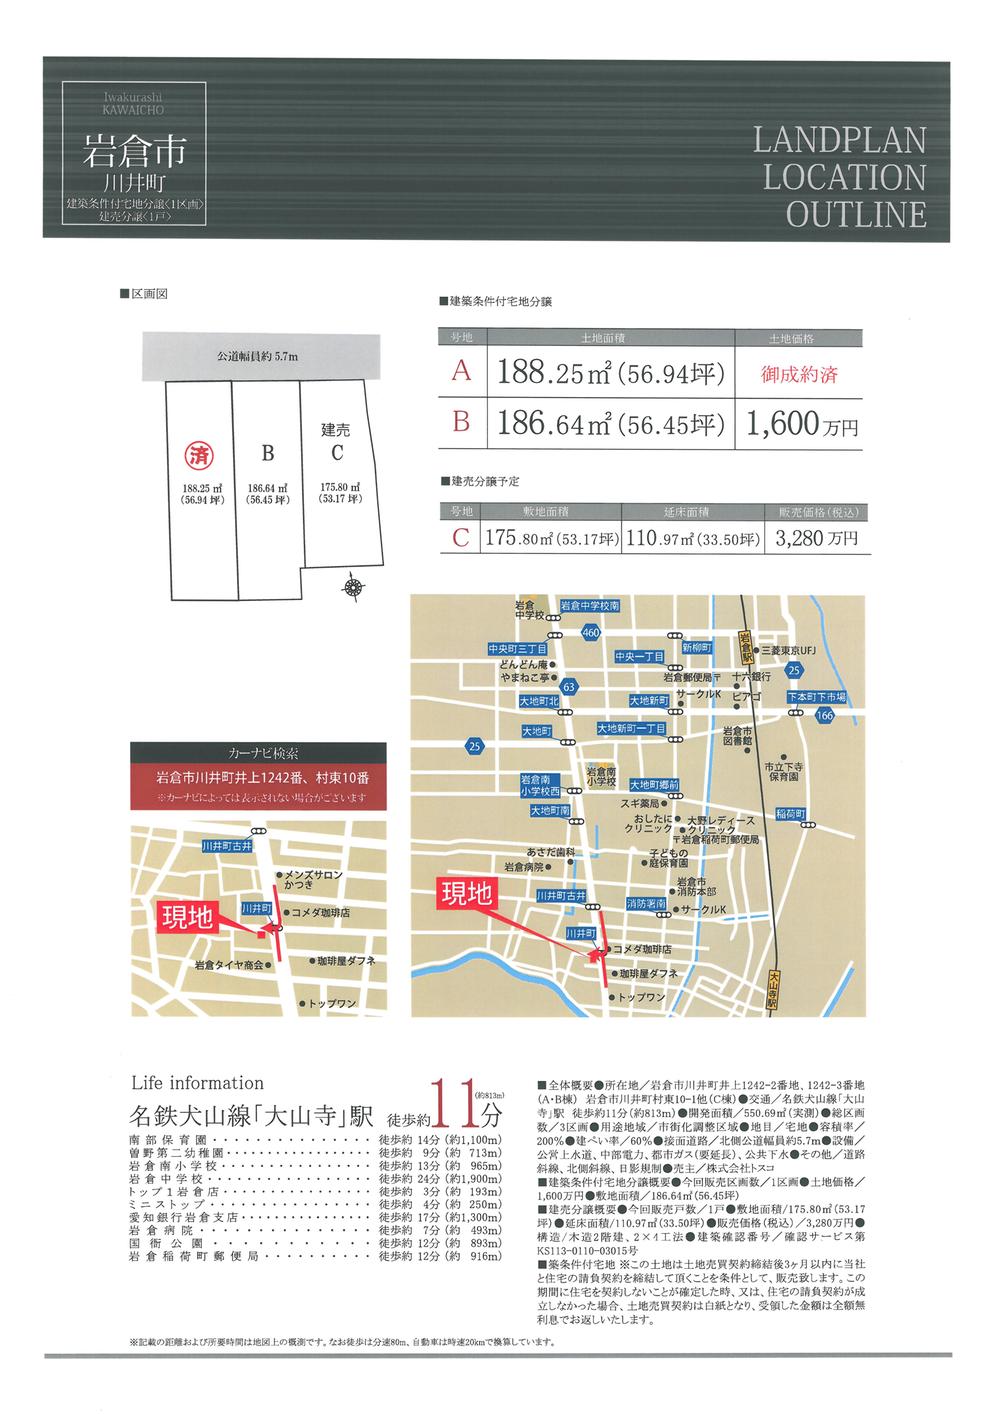 Compartment figure. 32,800,000 yen, 4LDK + S (storeroom), Land area 175.8 sq m , Building area 110.97 sq m Overview Figure